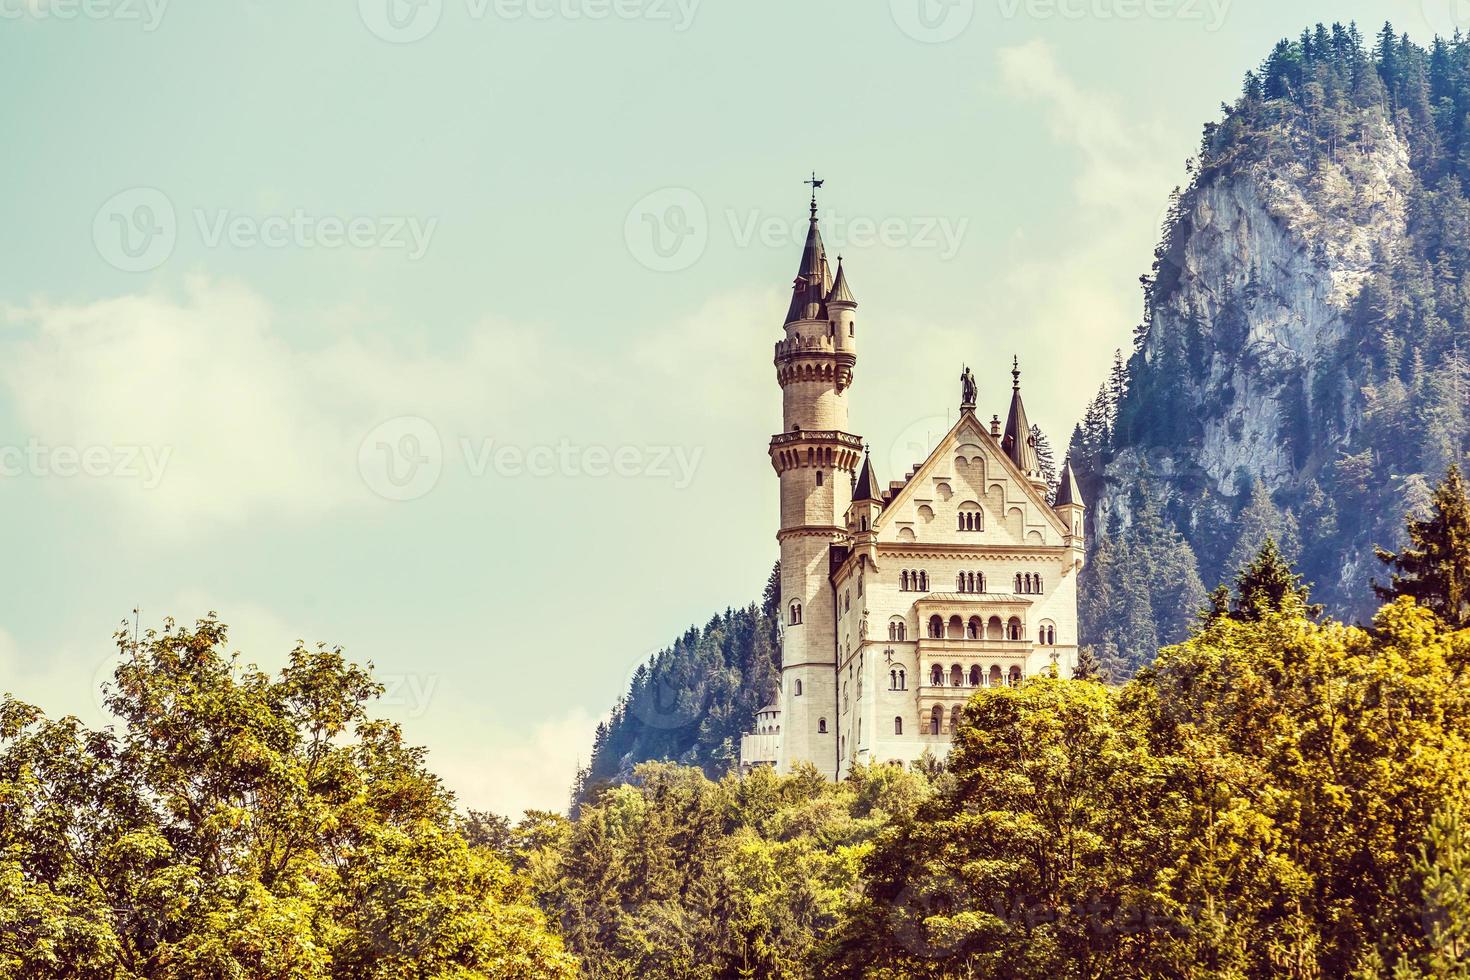 schön Aussicht von weltberühmt neuschwanstein Schloss, das neunzehnten Jahrhundert romanisch Wiederbelebung Palast gebaut zum König ludwig ii auf ein robust Cliff in der Nähe von füssen, Südwesten Bayern, Deutschland foto